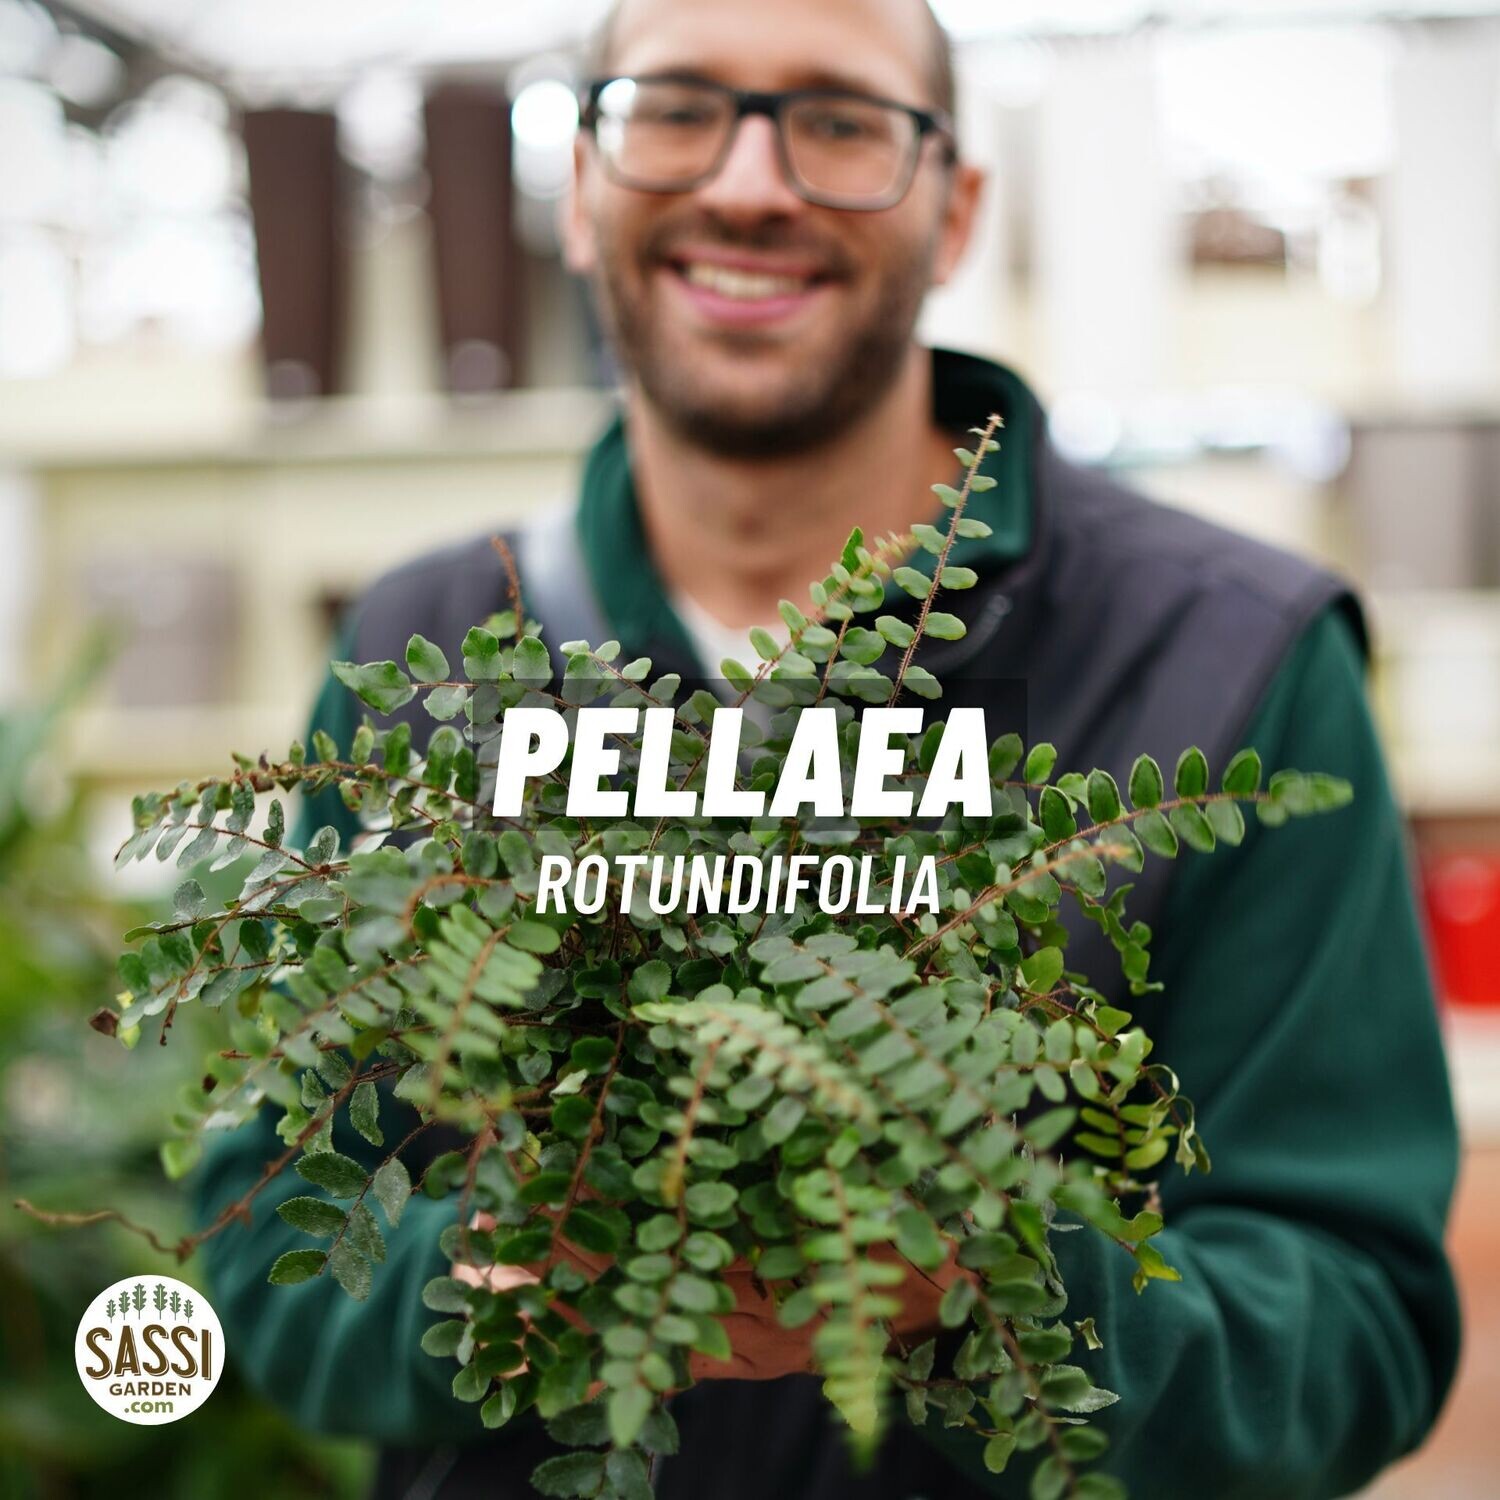 Pellaea Rotundifolia vaso 12